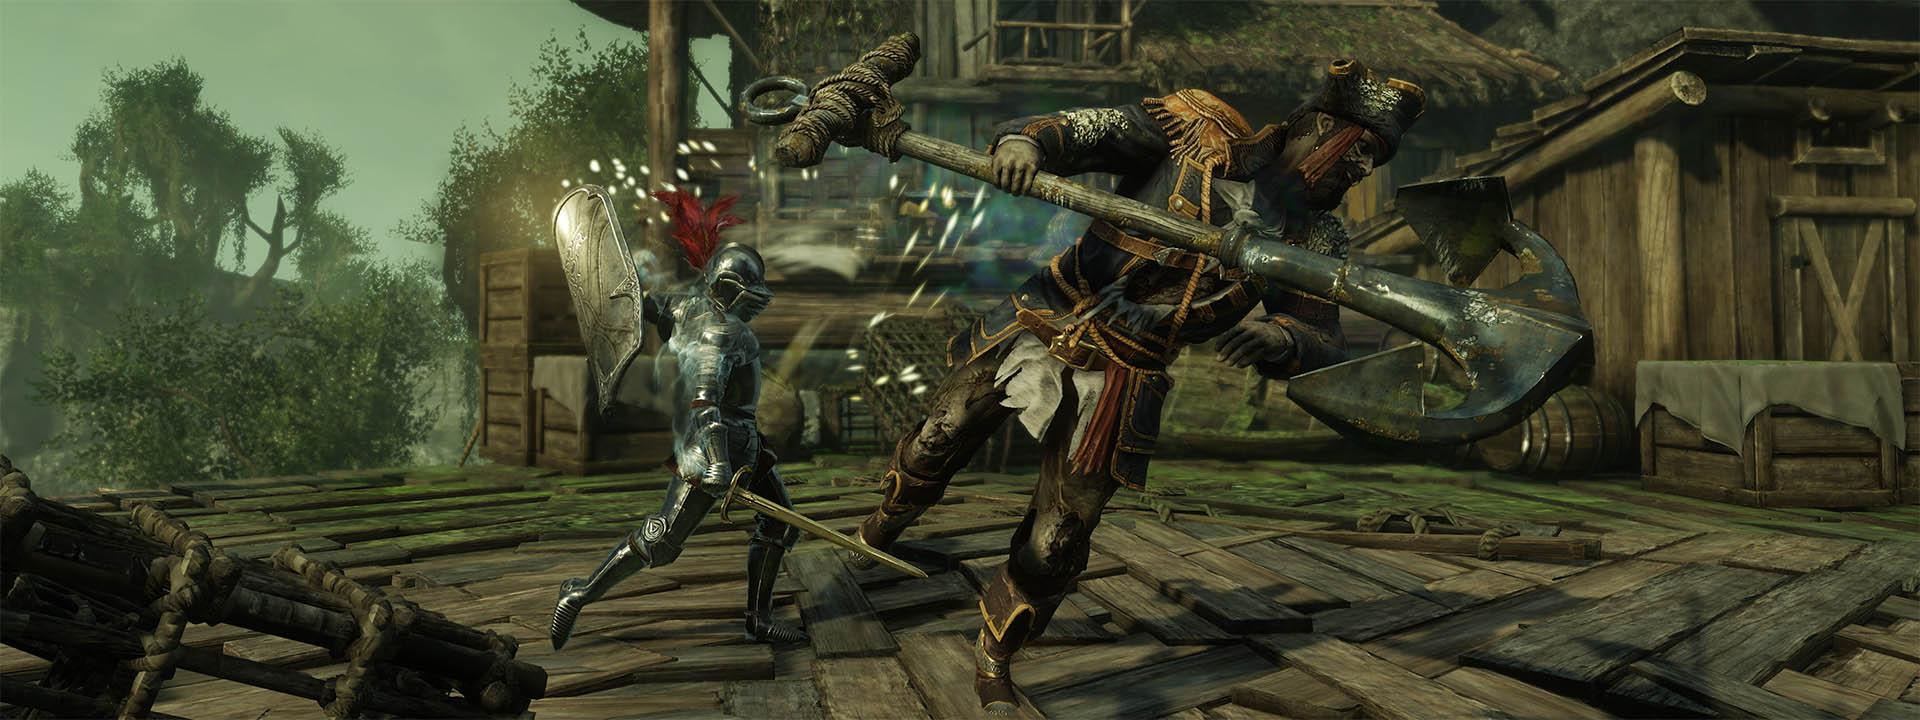 Une capture d’écran où on voit un personnage incarné par un joueur maniant le nouveau pavois en plein combat.